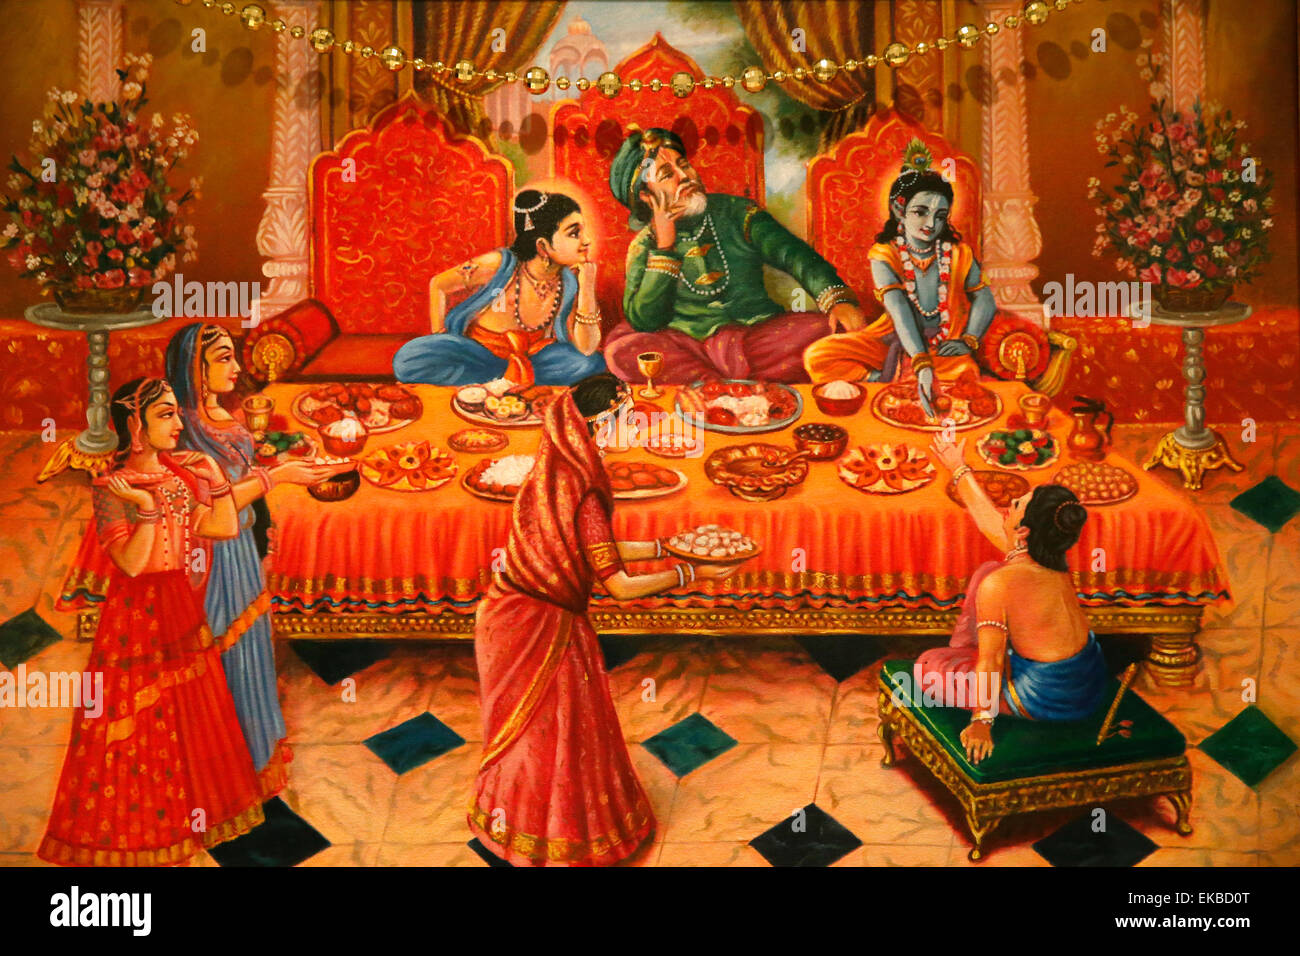 Dans la peinture d'ISKCON temple hindou de Londres avec son frère Krishna Balaram et père Nanda Maharaj, London, England, UK Banque D'Images